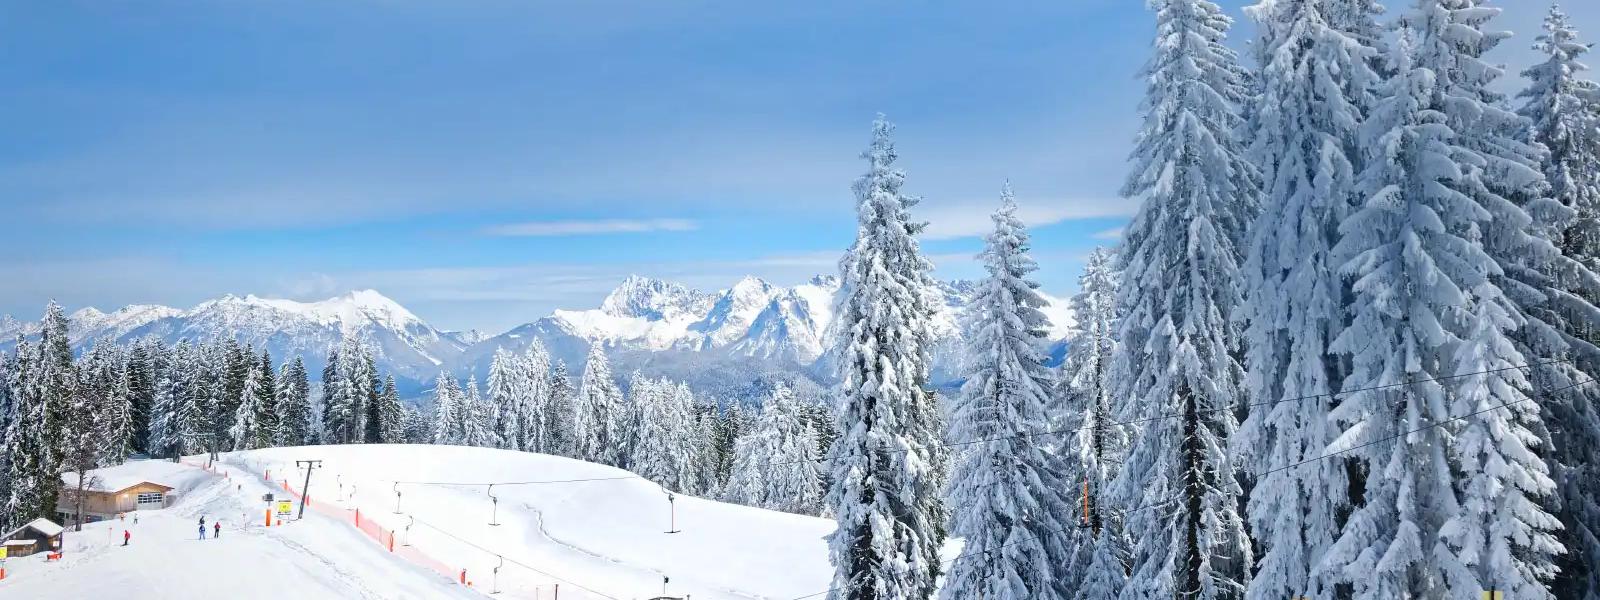 Ferienwohnungen & Ferienhäuser für Skiurlaub in Italien - e-domizil